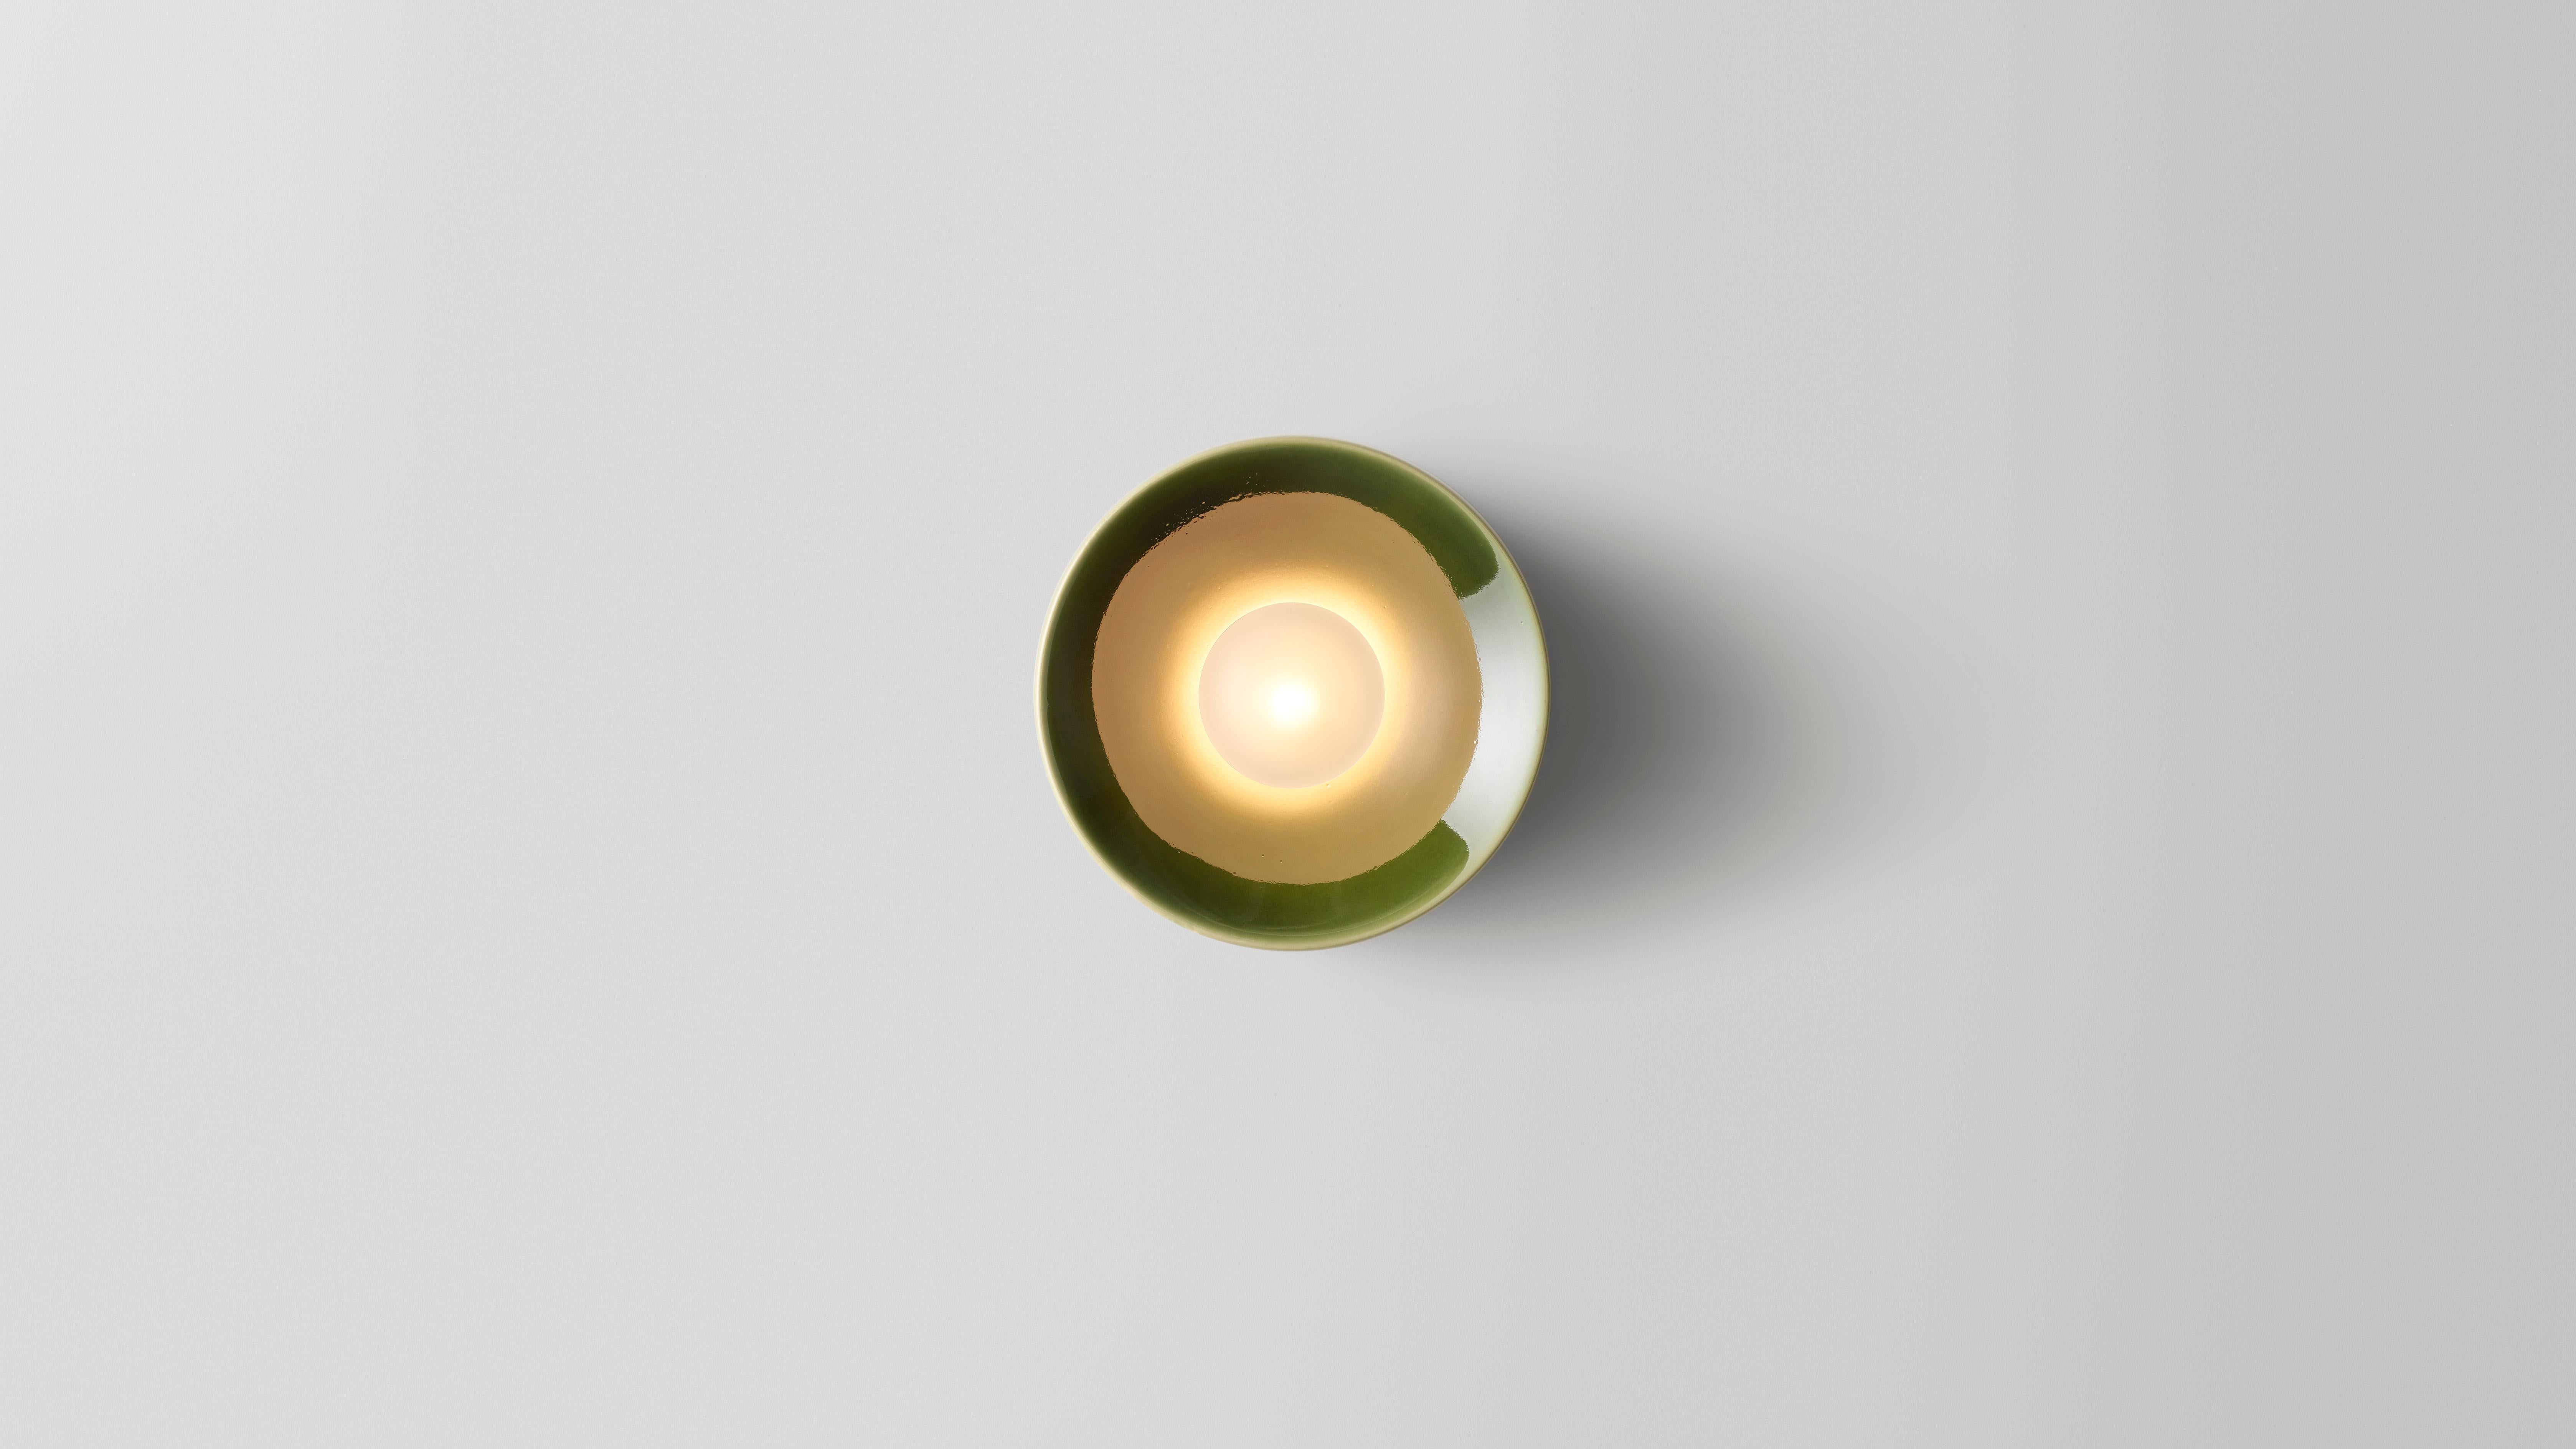 Anton lampe verte en céramique de Volker Haug
Dimensions : Ø 18 x P 10 cm : Ø 18 x P 10 cm. 
MATERIAL : Céramique coulée

Également disponible en différentes tailles : Ø 8, 13 ou 18 cm. Veuillez nous contacter.

Glaçage : une sélection de couleurs